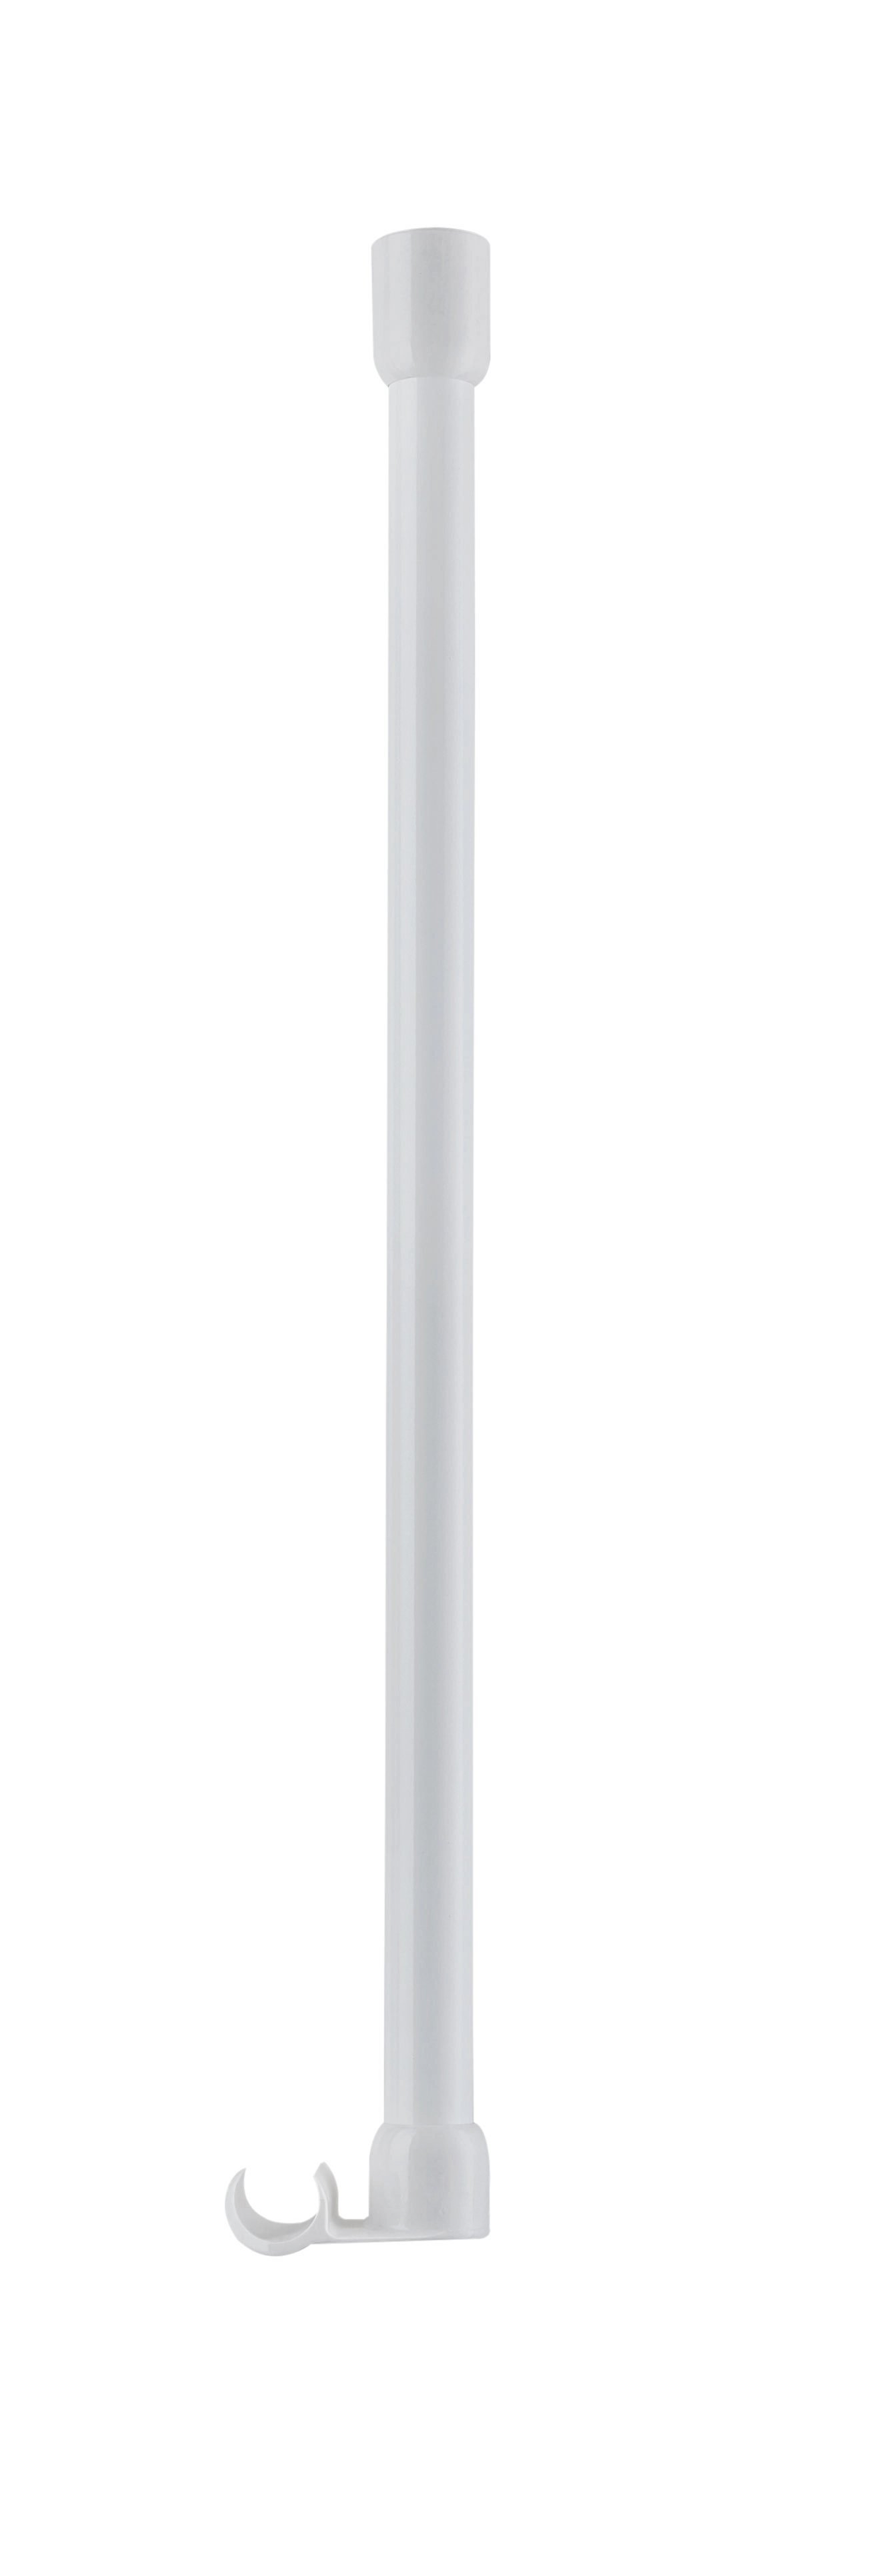 DV-Stangen 25 mm, Deckenhalter Weiß, 60 cm